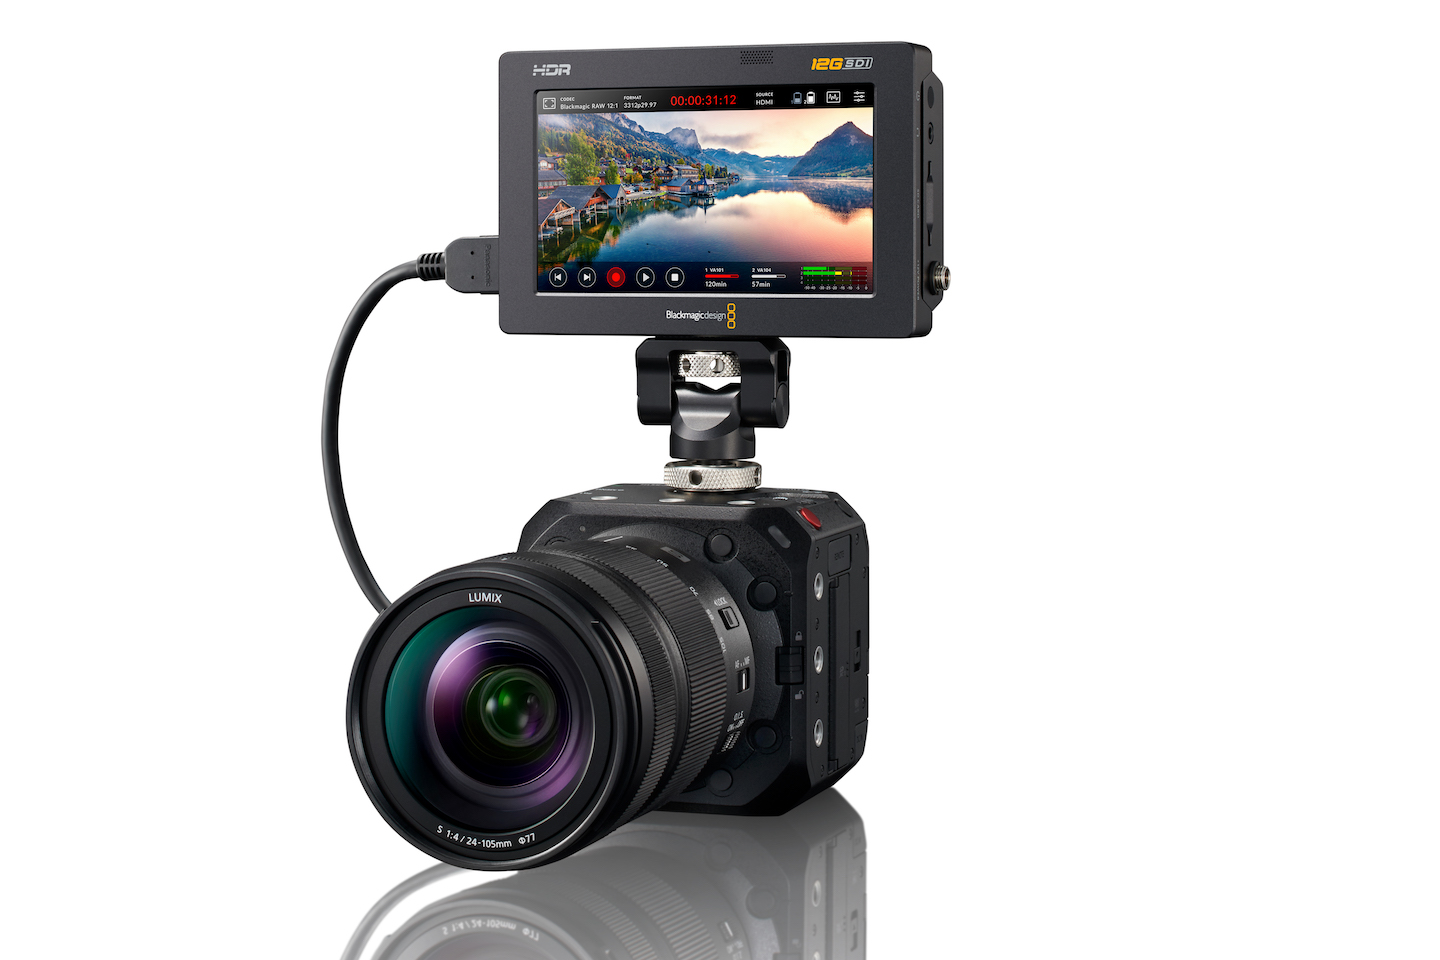 Panasonic annonce la Lumix BS1H, caméra compacte 6K en Plein ()